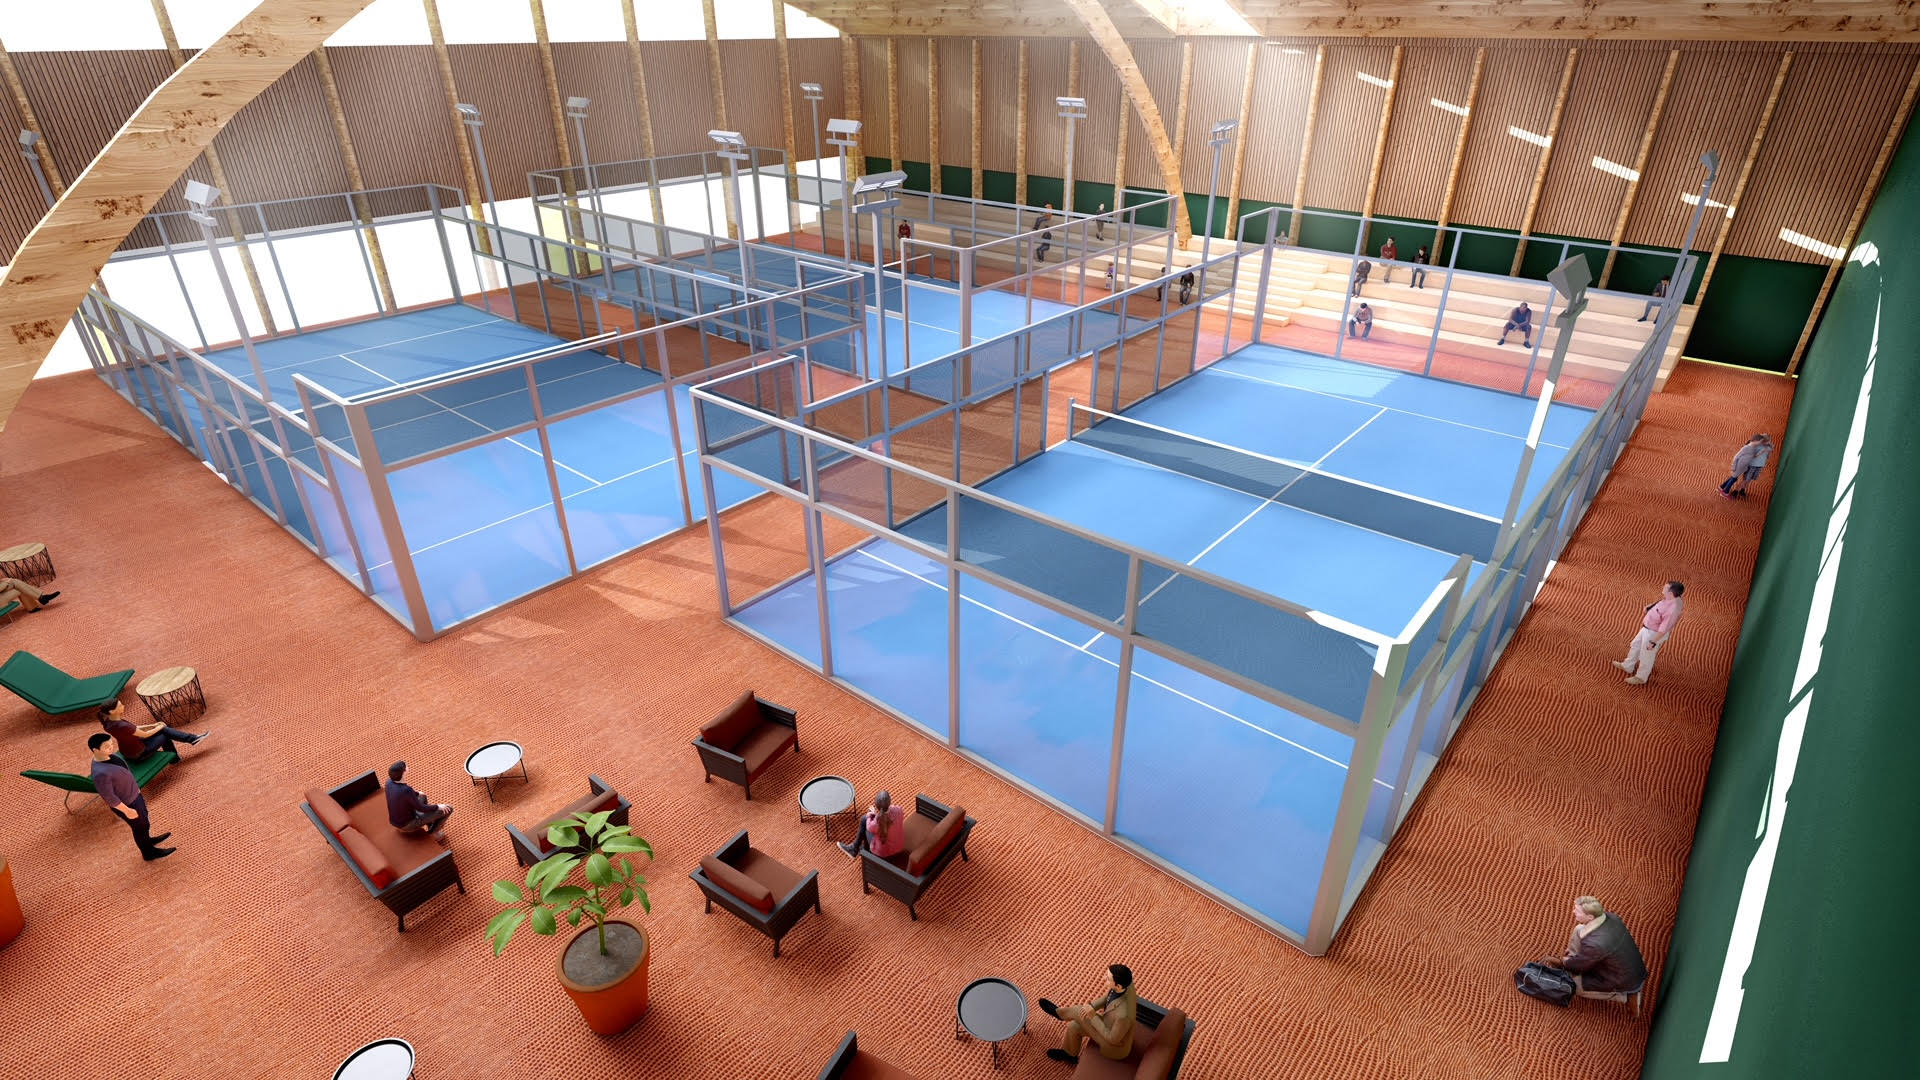 ¡Grenoble Tennis lanza su proyecto de 7 pistas!